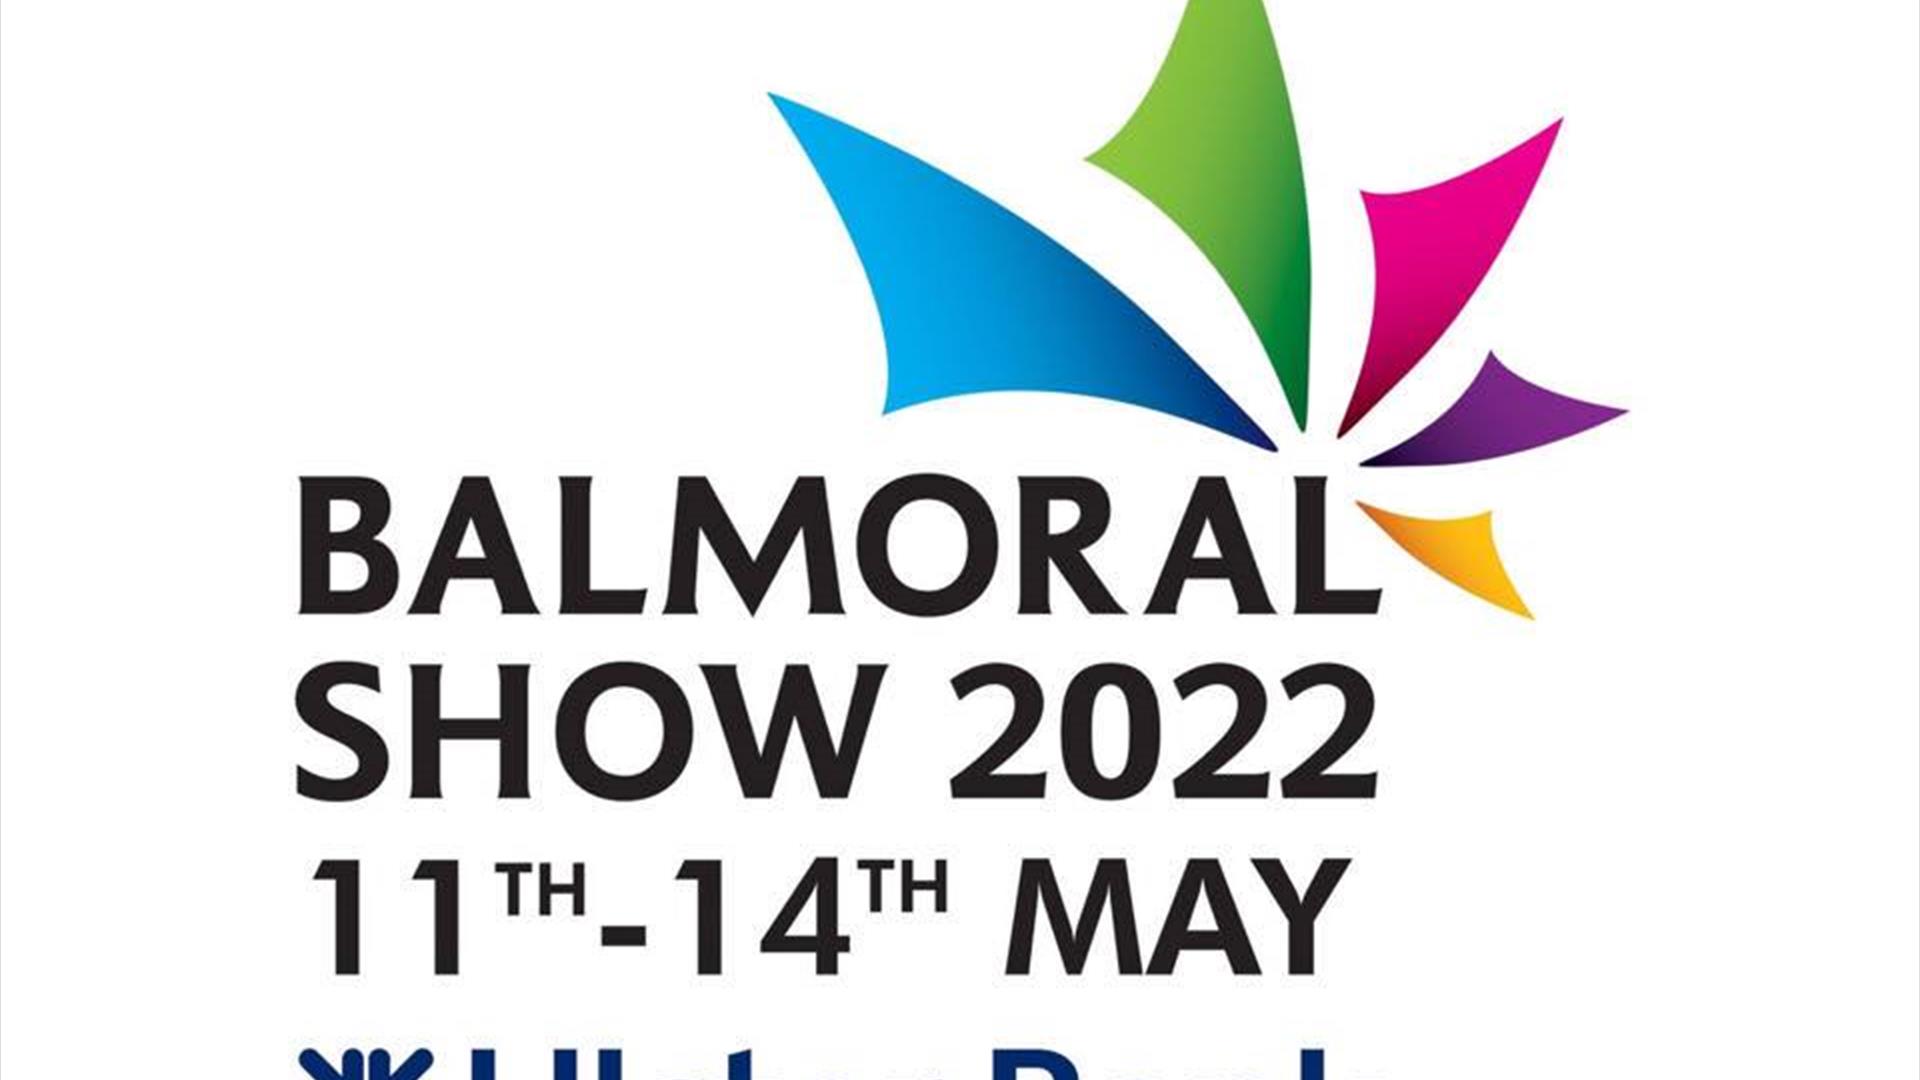 Image shows Balmoral Show 2022 11th-14th May and Ulster Bank logo